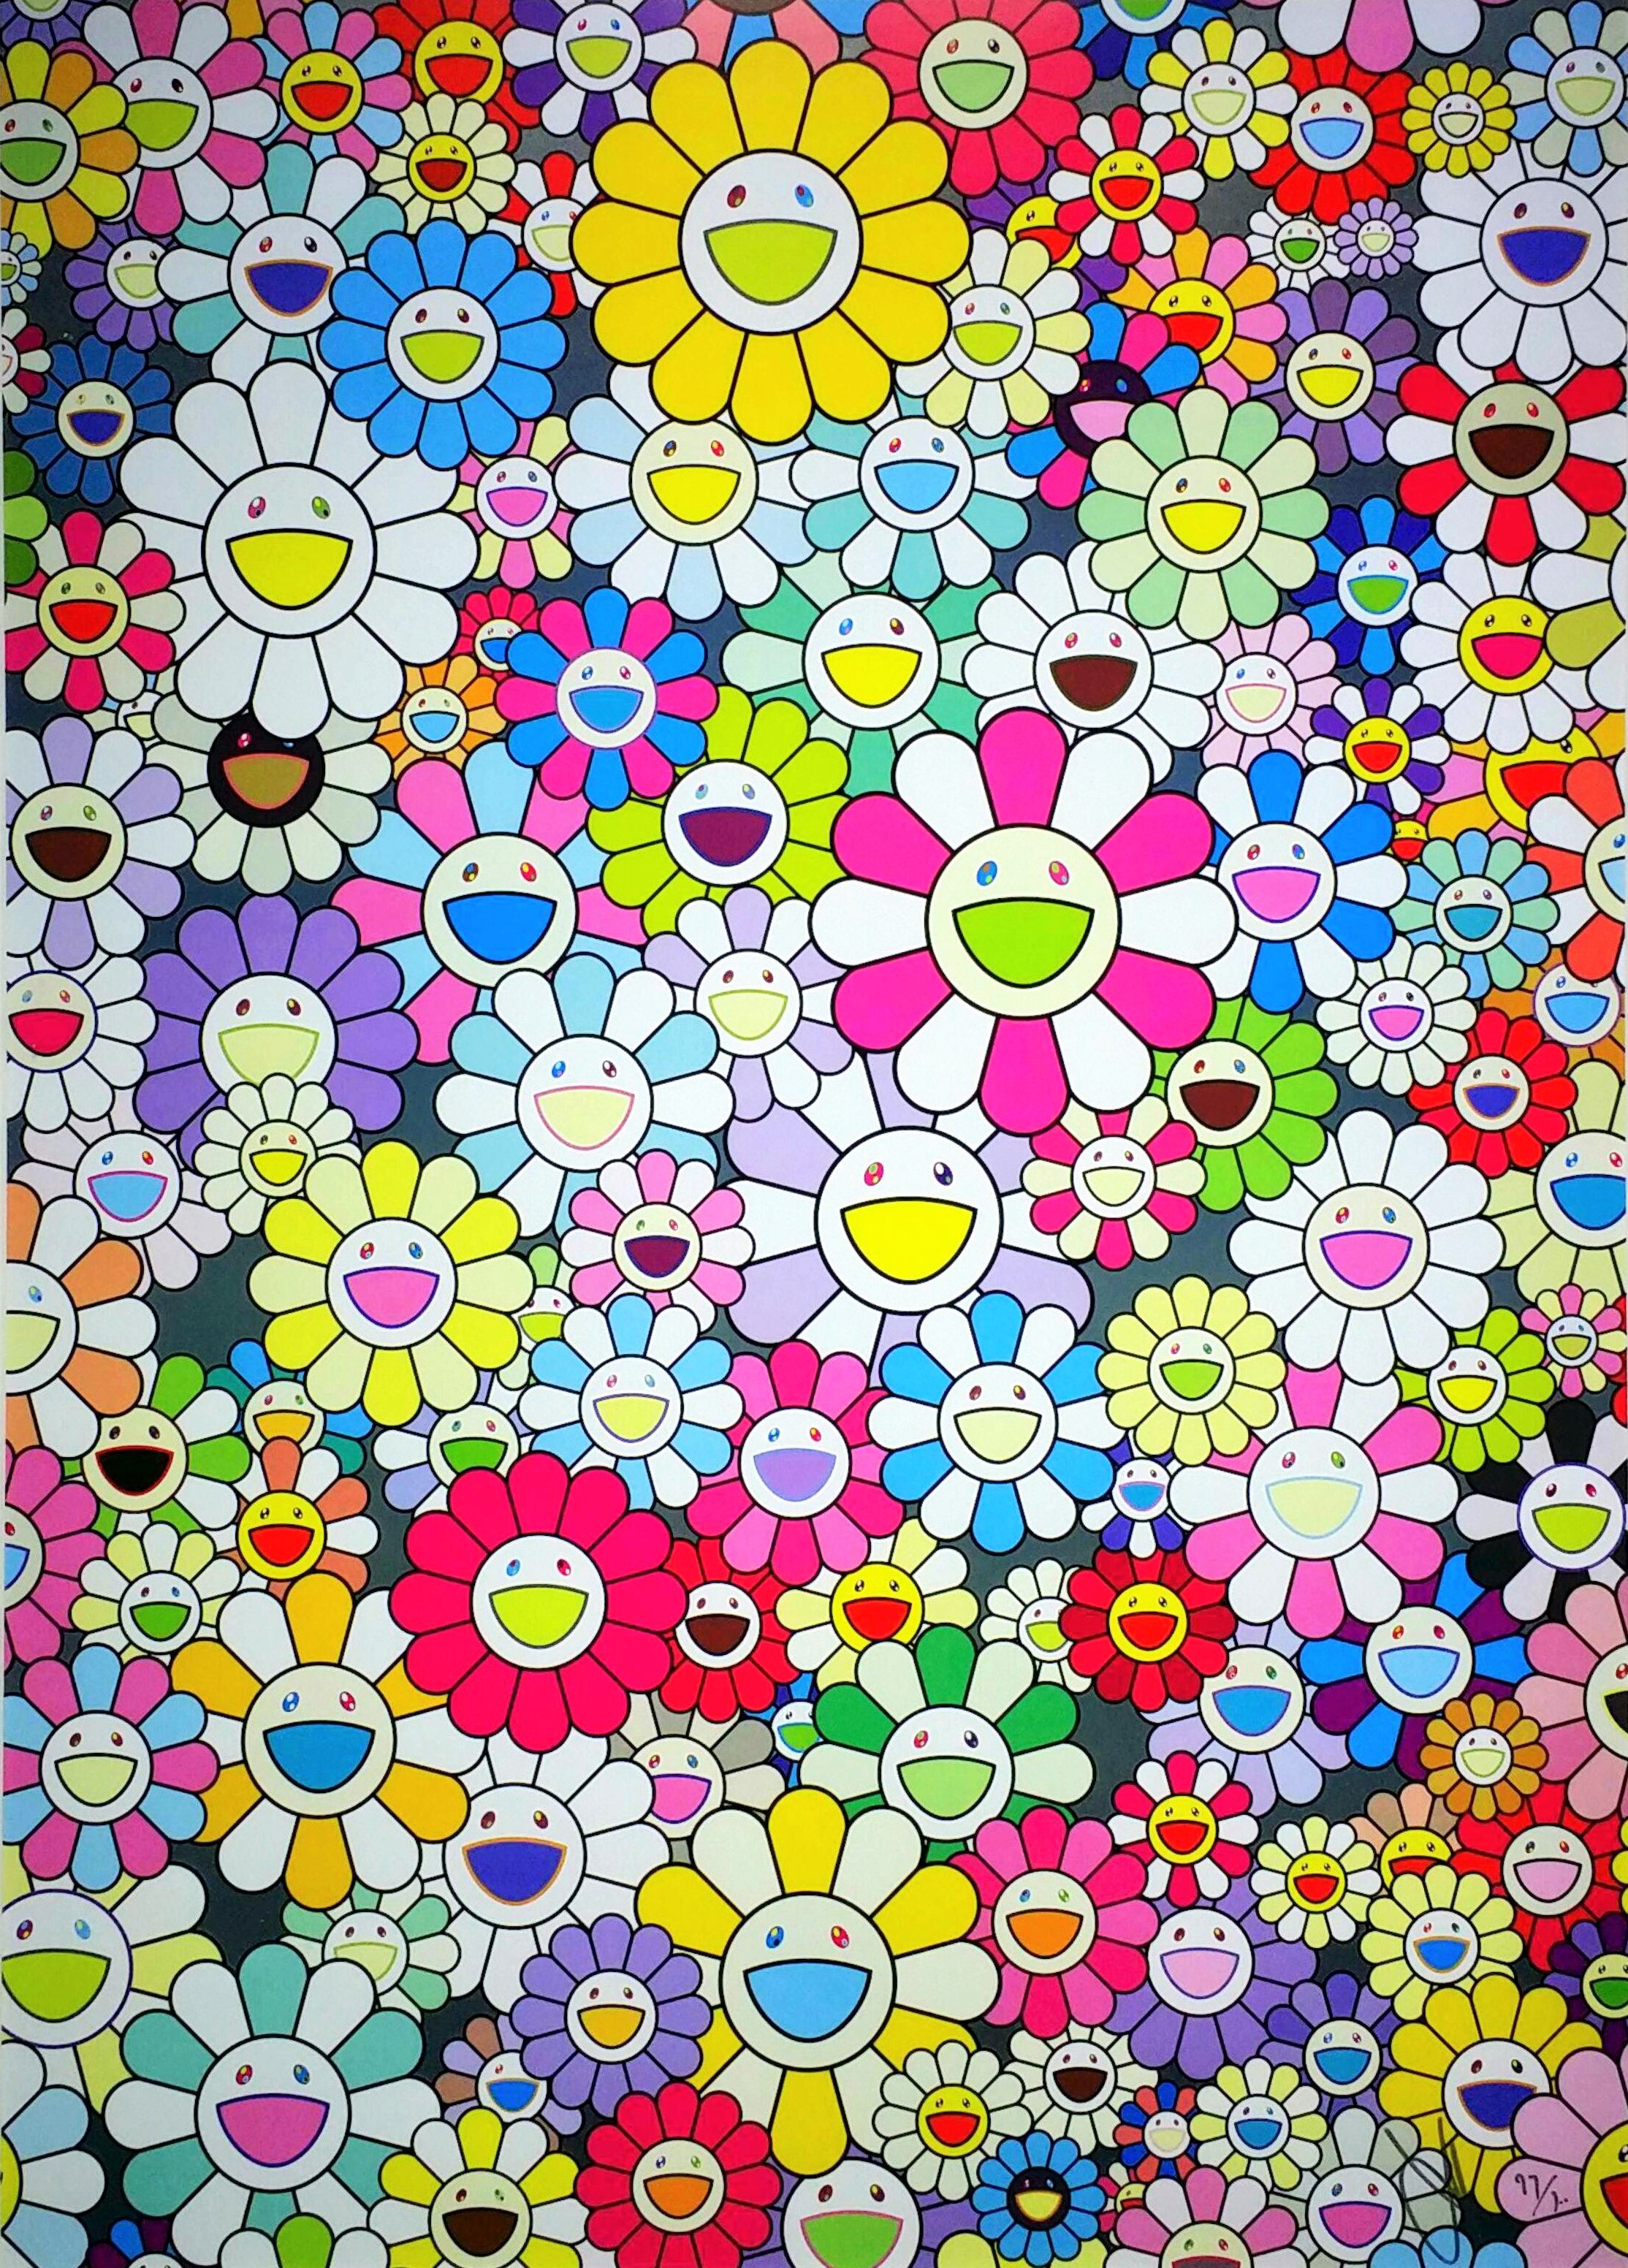 村上隆 – シャングリラーシャングリラーマルチカラー（オフセットリトグラフ 画面 72.7×52.2cm） :: 画廊アートエミュウ